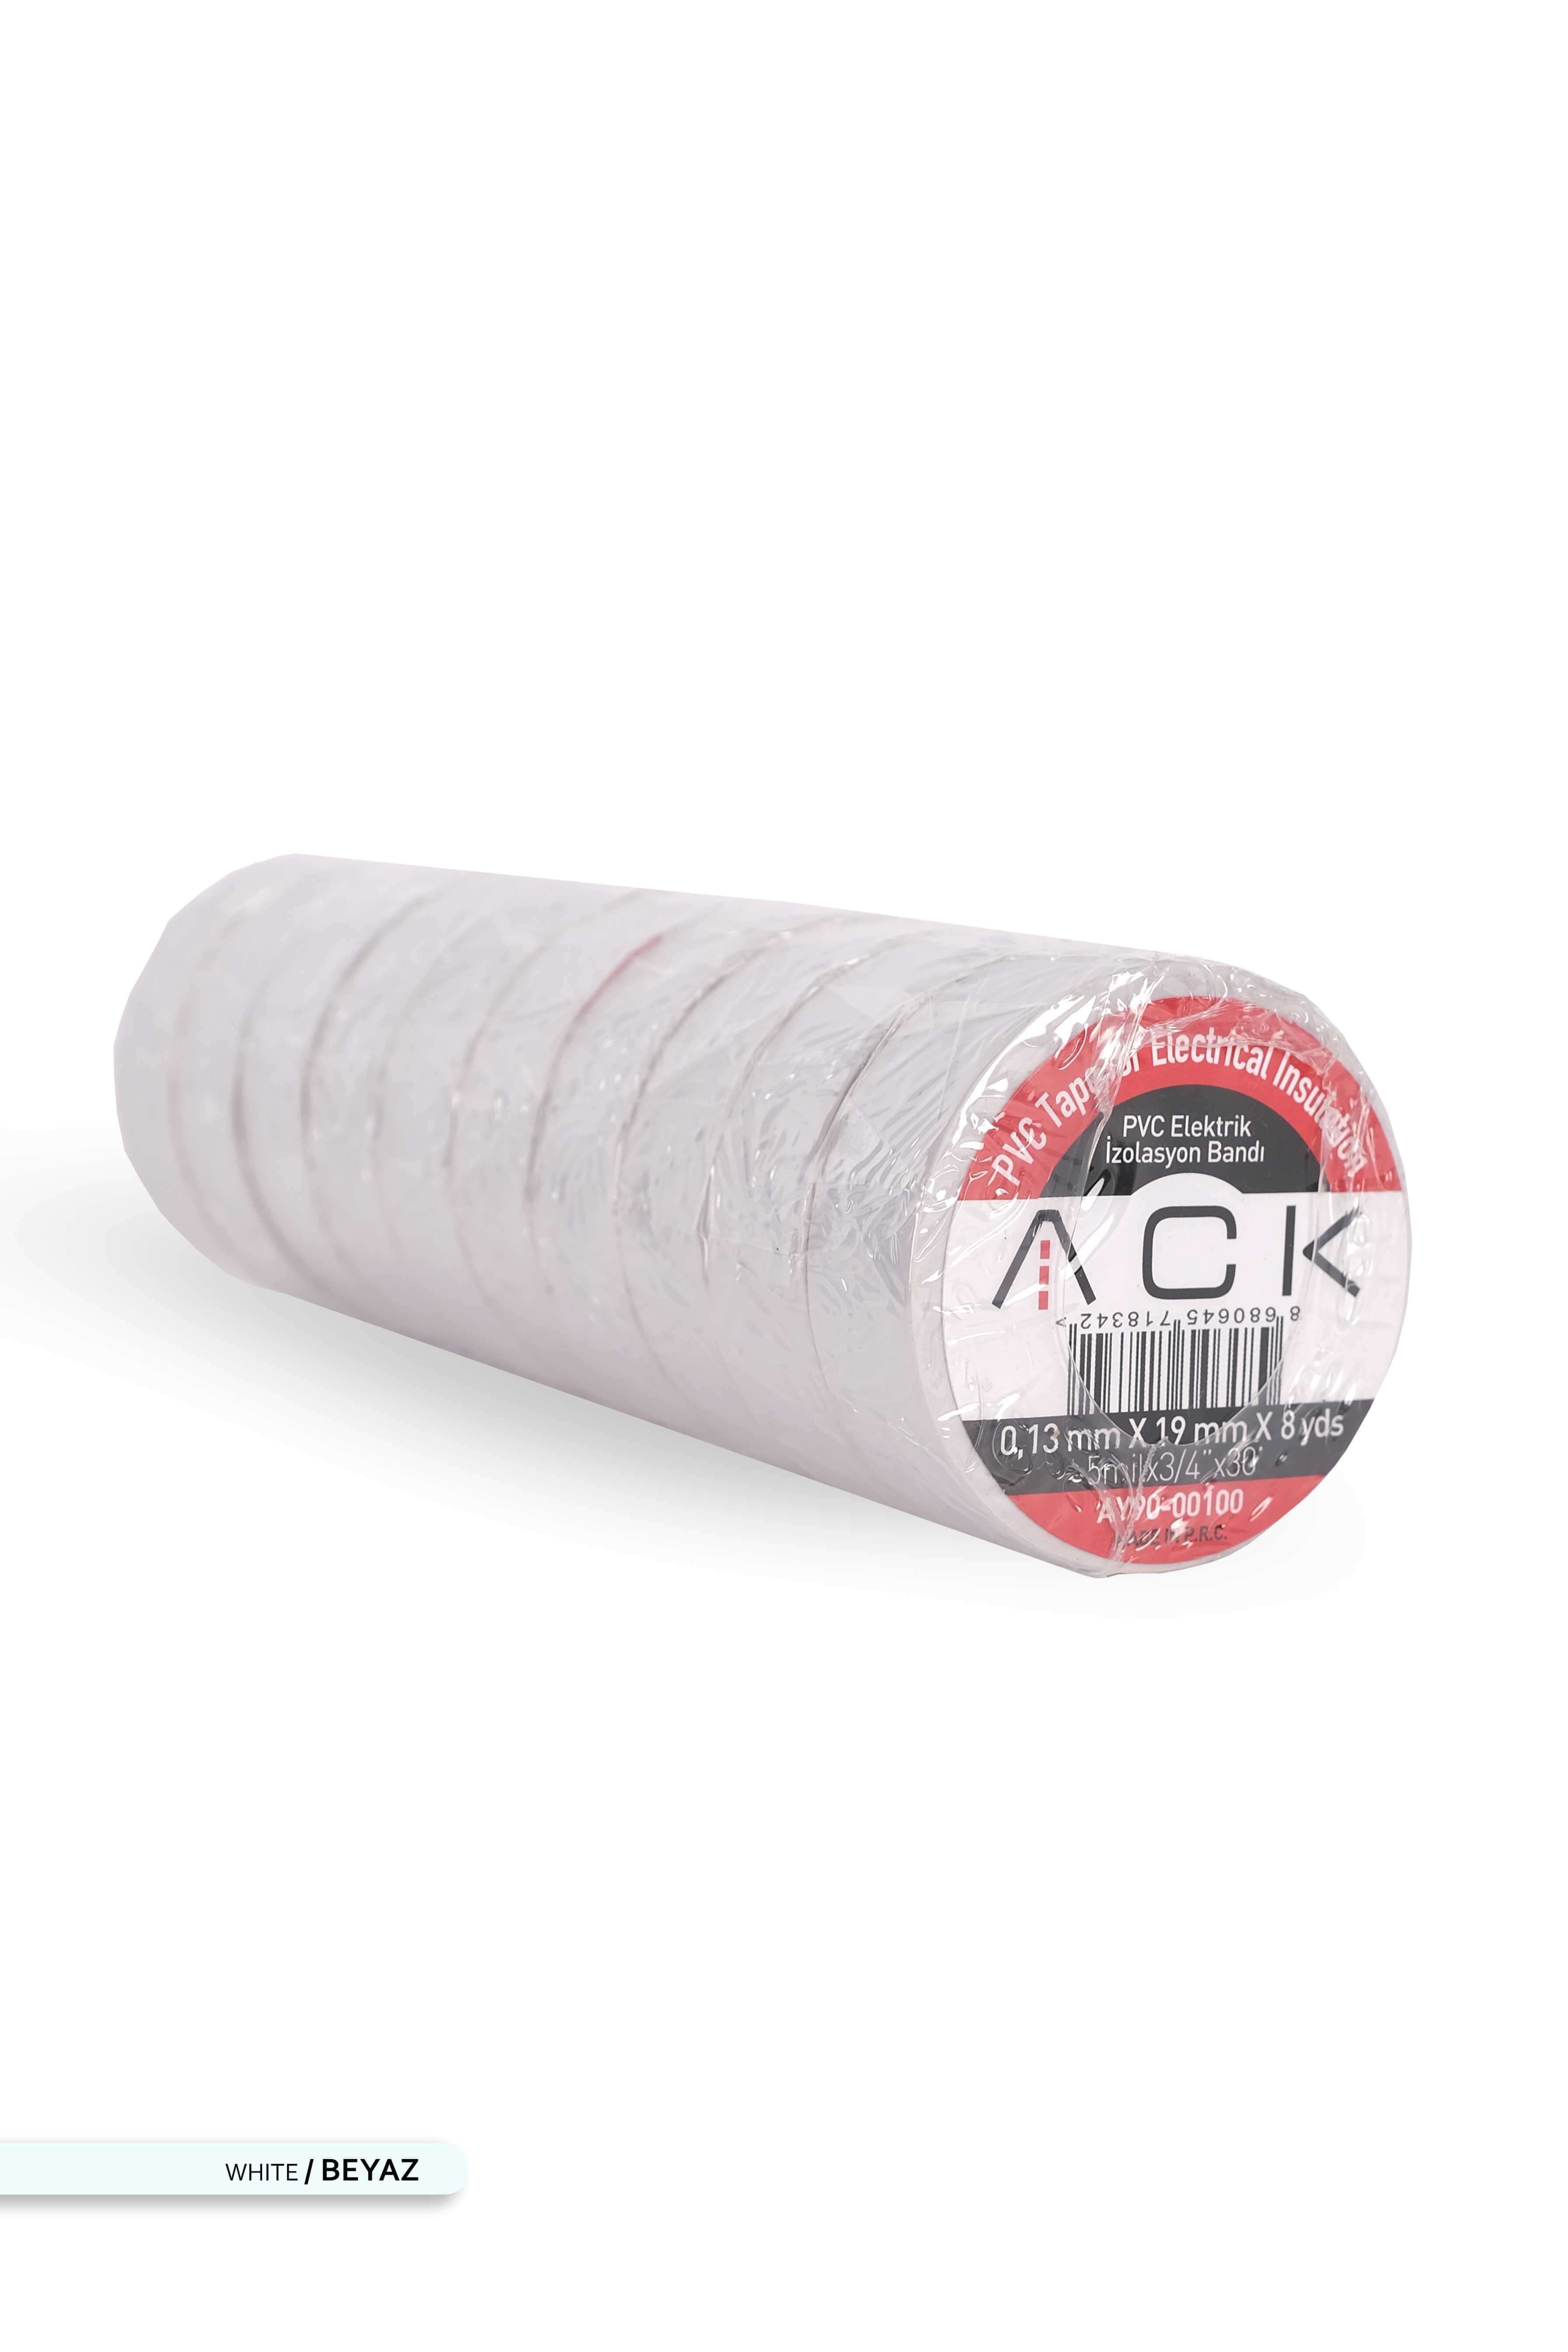 ACK PVC Elektrik İzolasyon Bandı Beyaz 8m